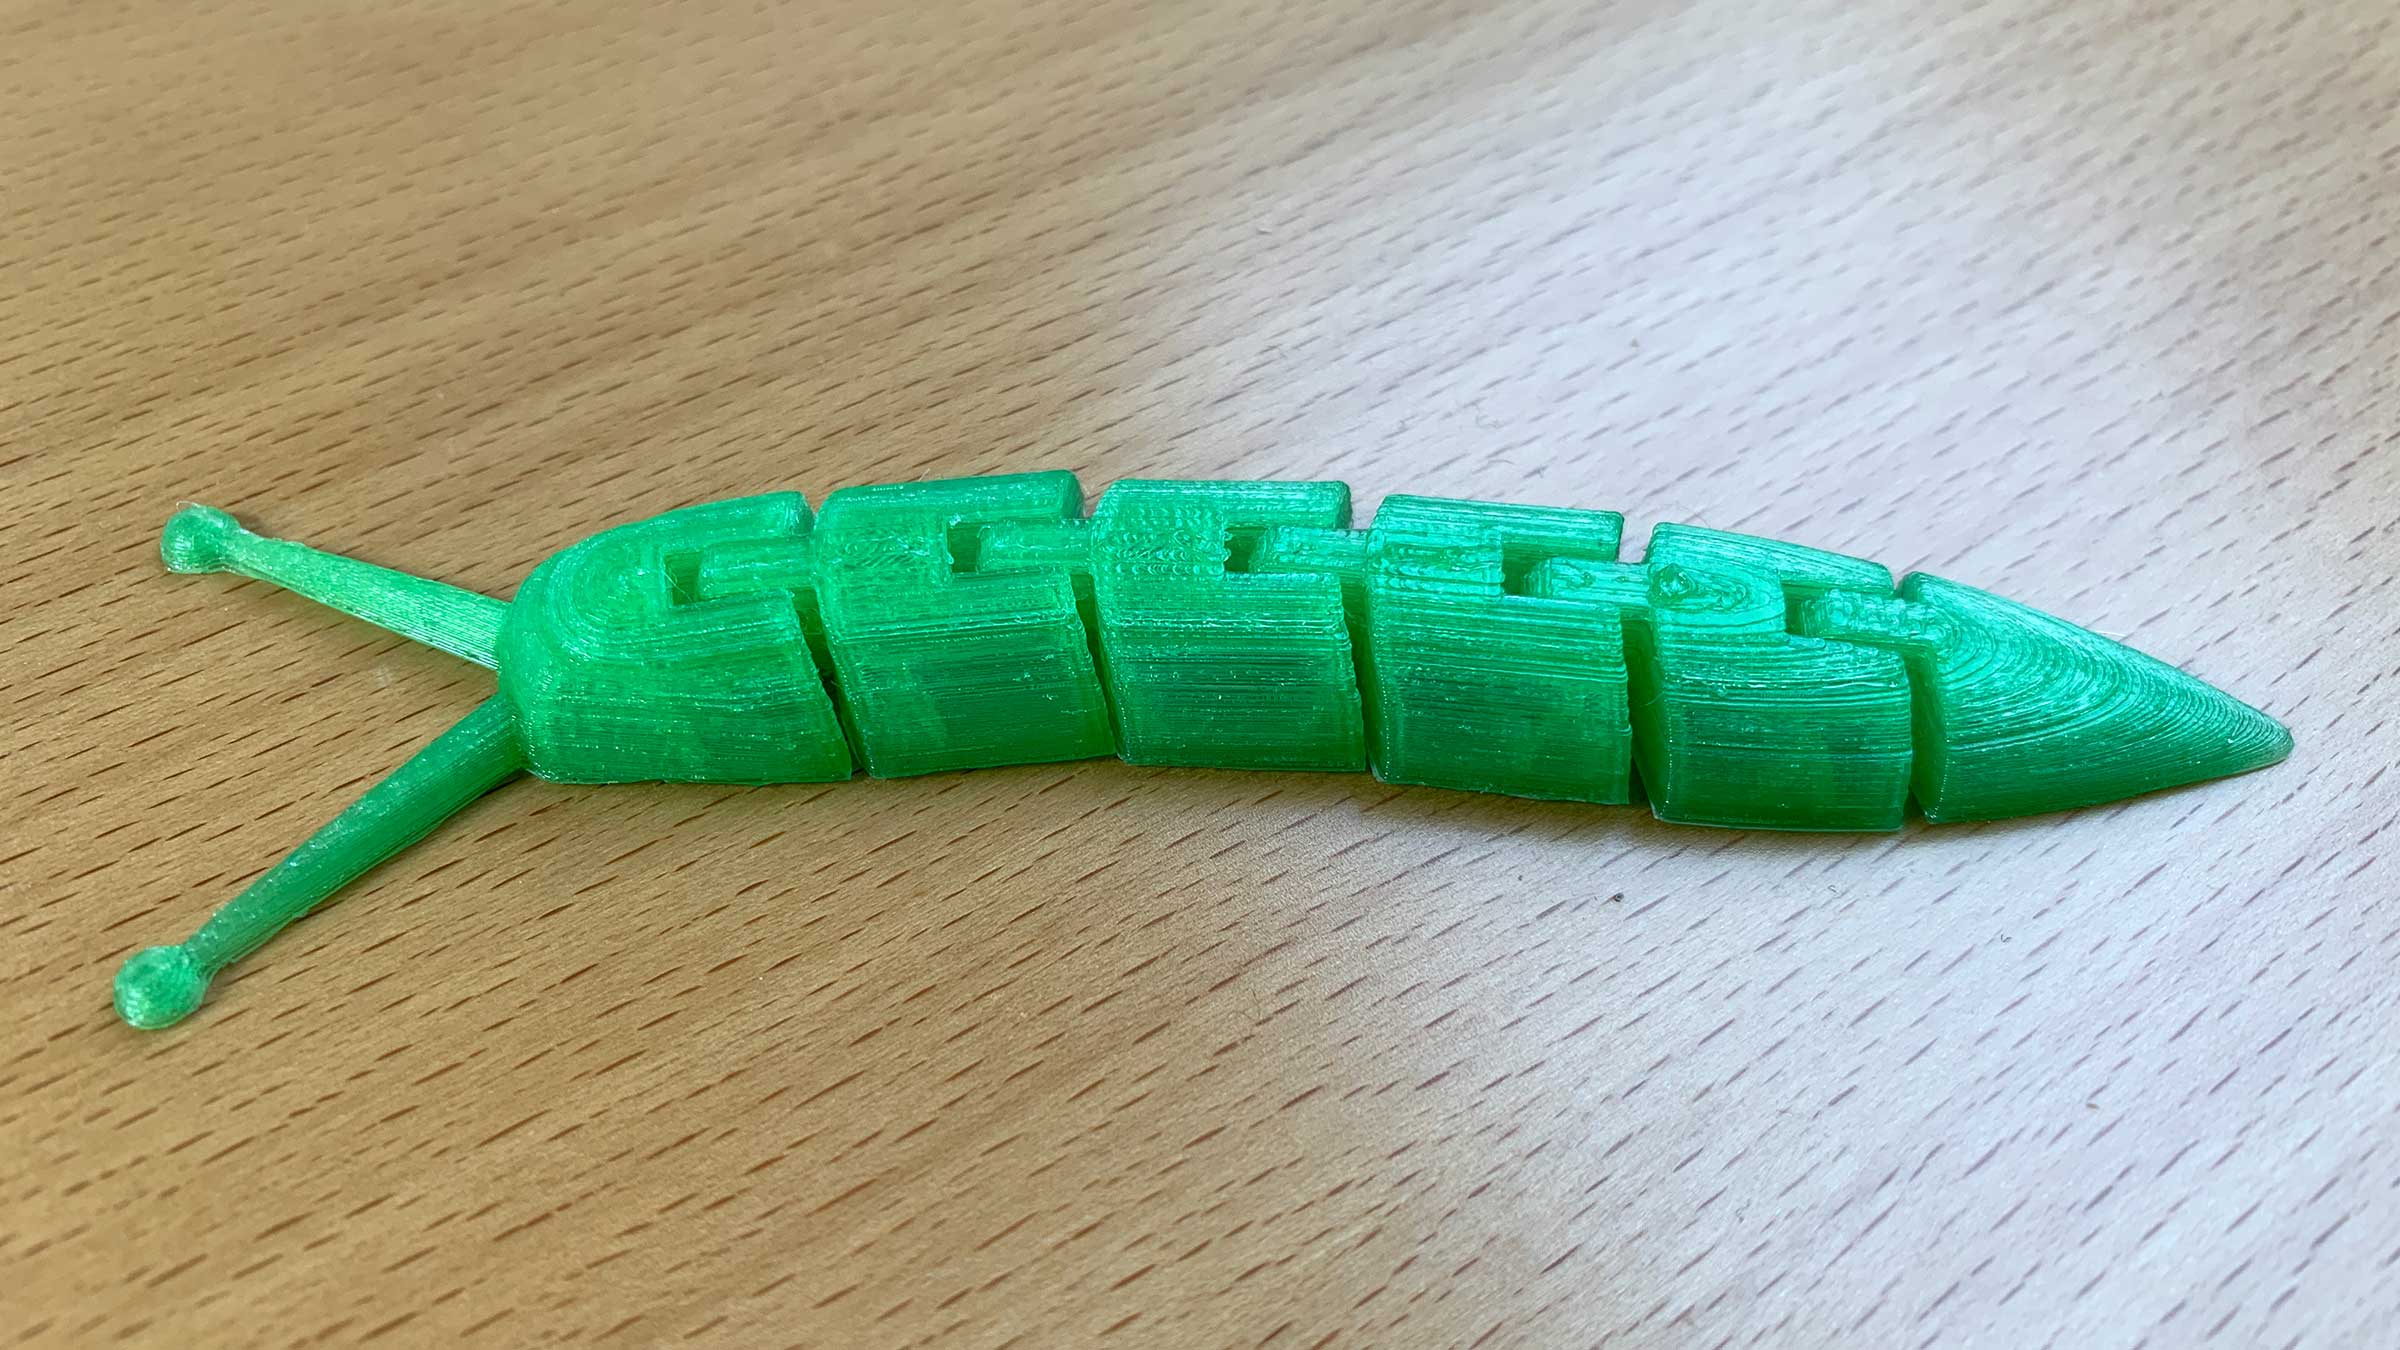 Eine grüne 3D-Schnecke (ohne Haus, dafür mit sechs beweglichen Gliedern und langen Fühlern)